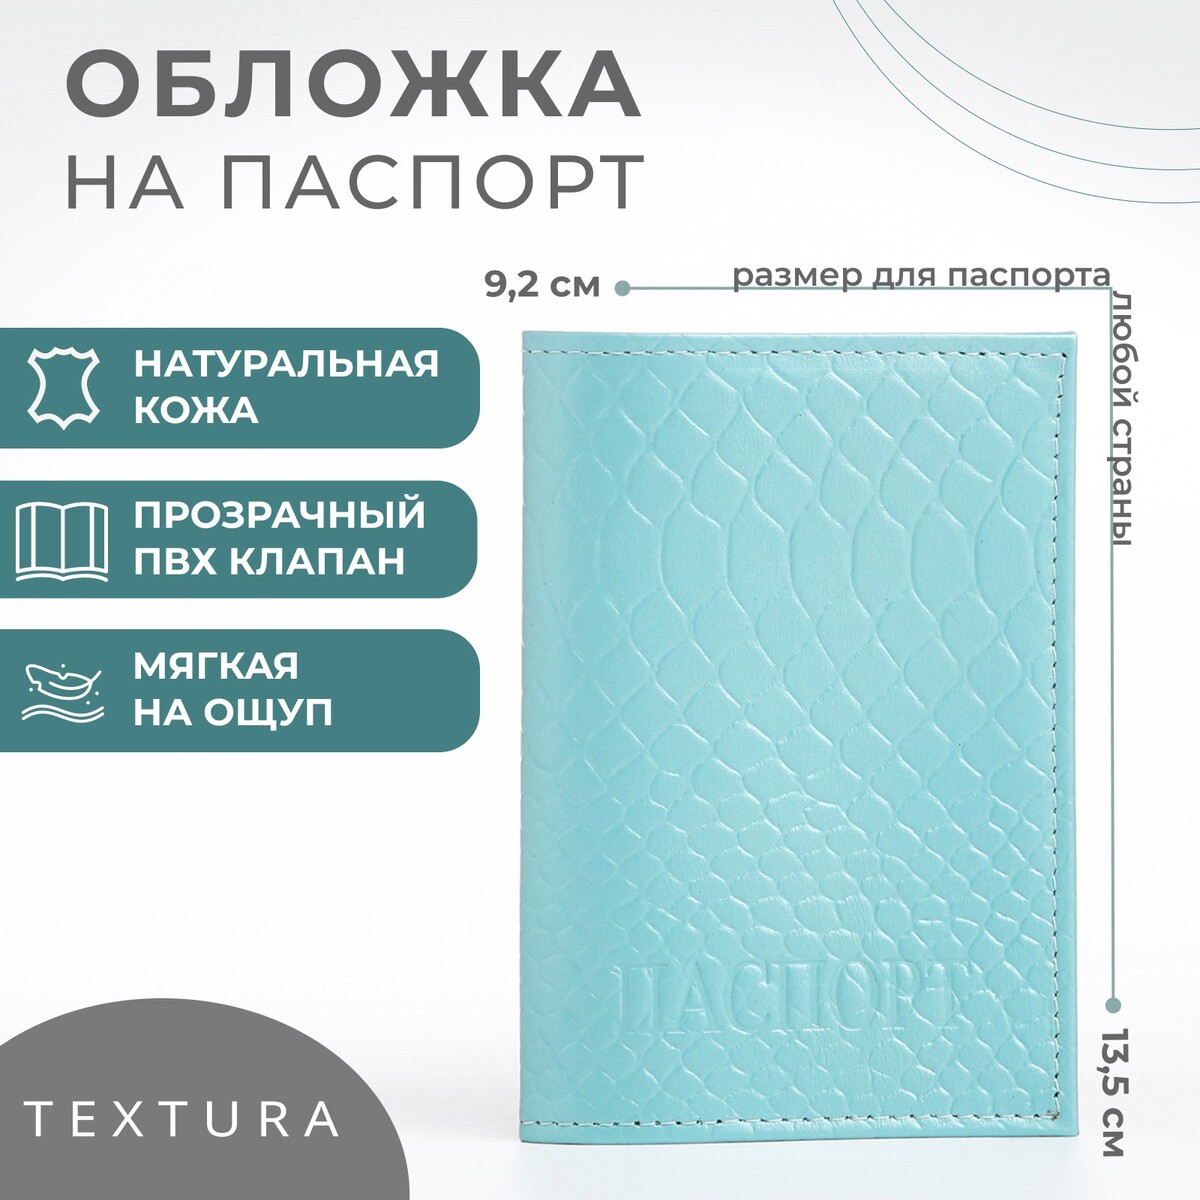 Обложка для паспорта textura, цвет голубой обложка для паспорта textura голубой